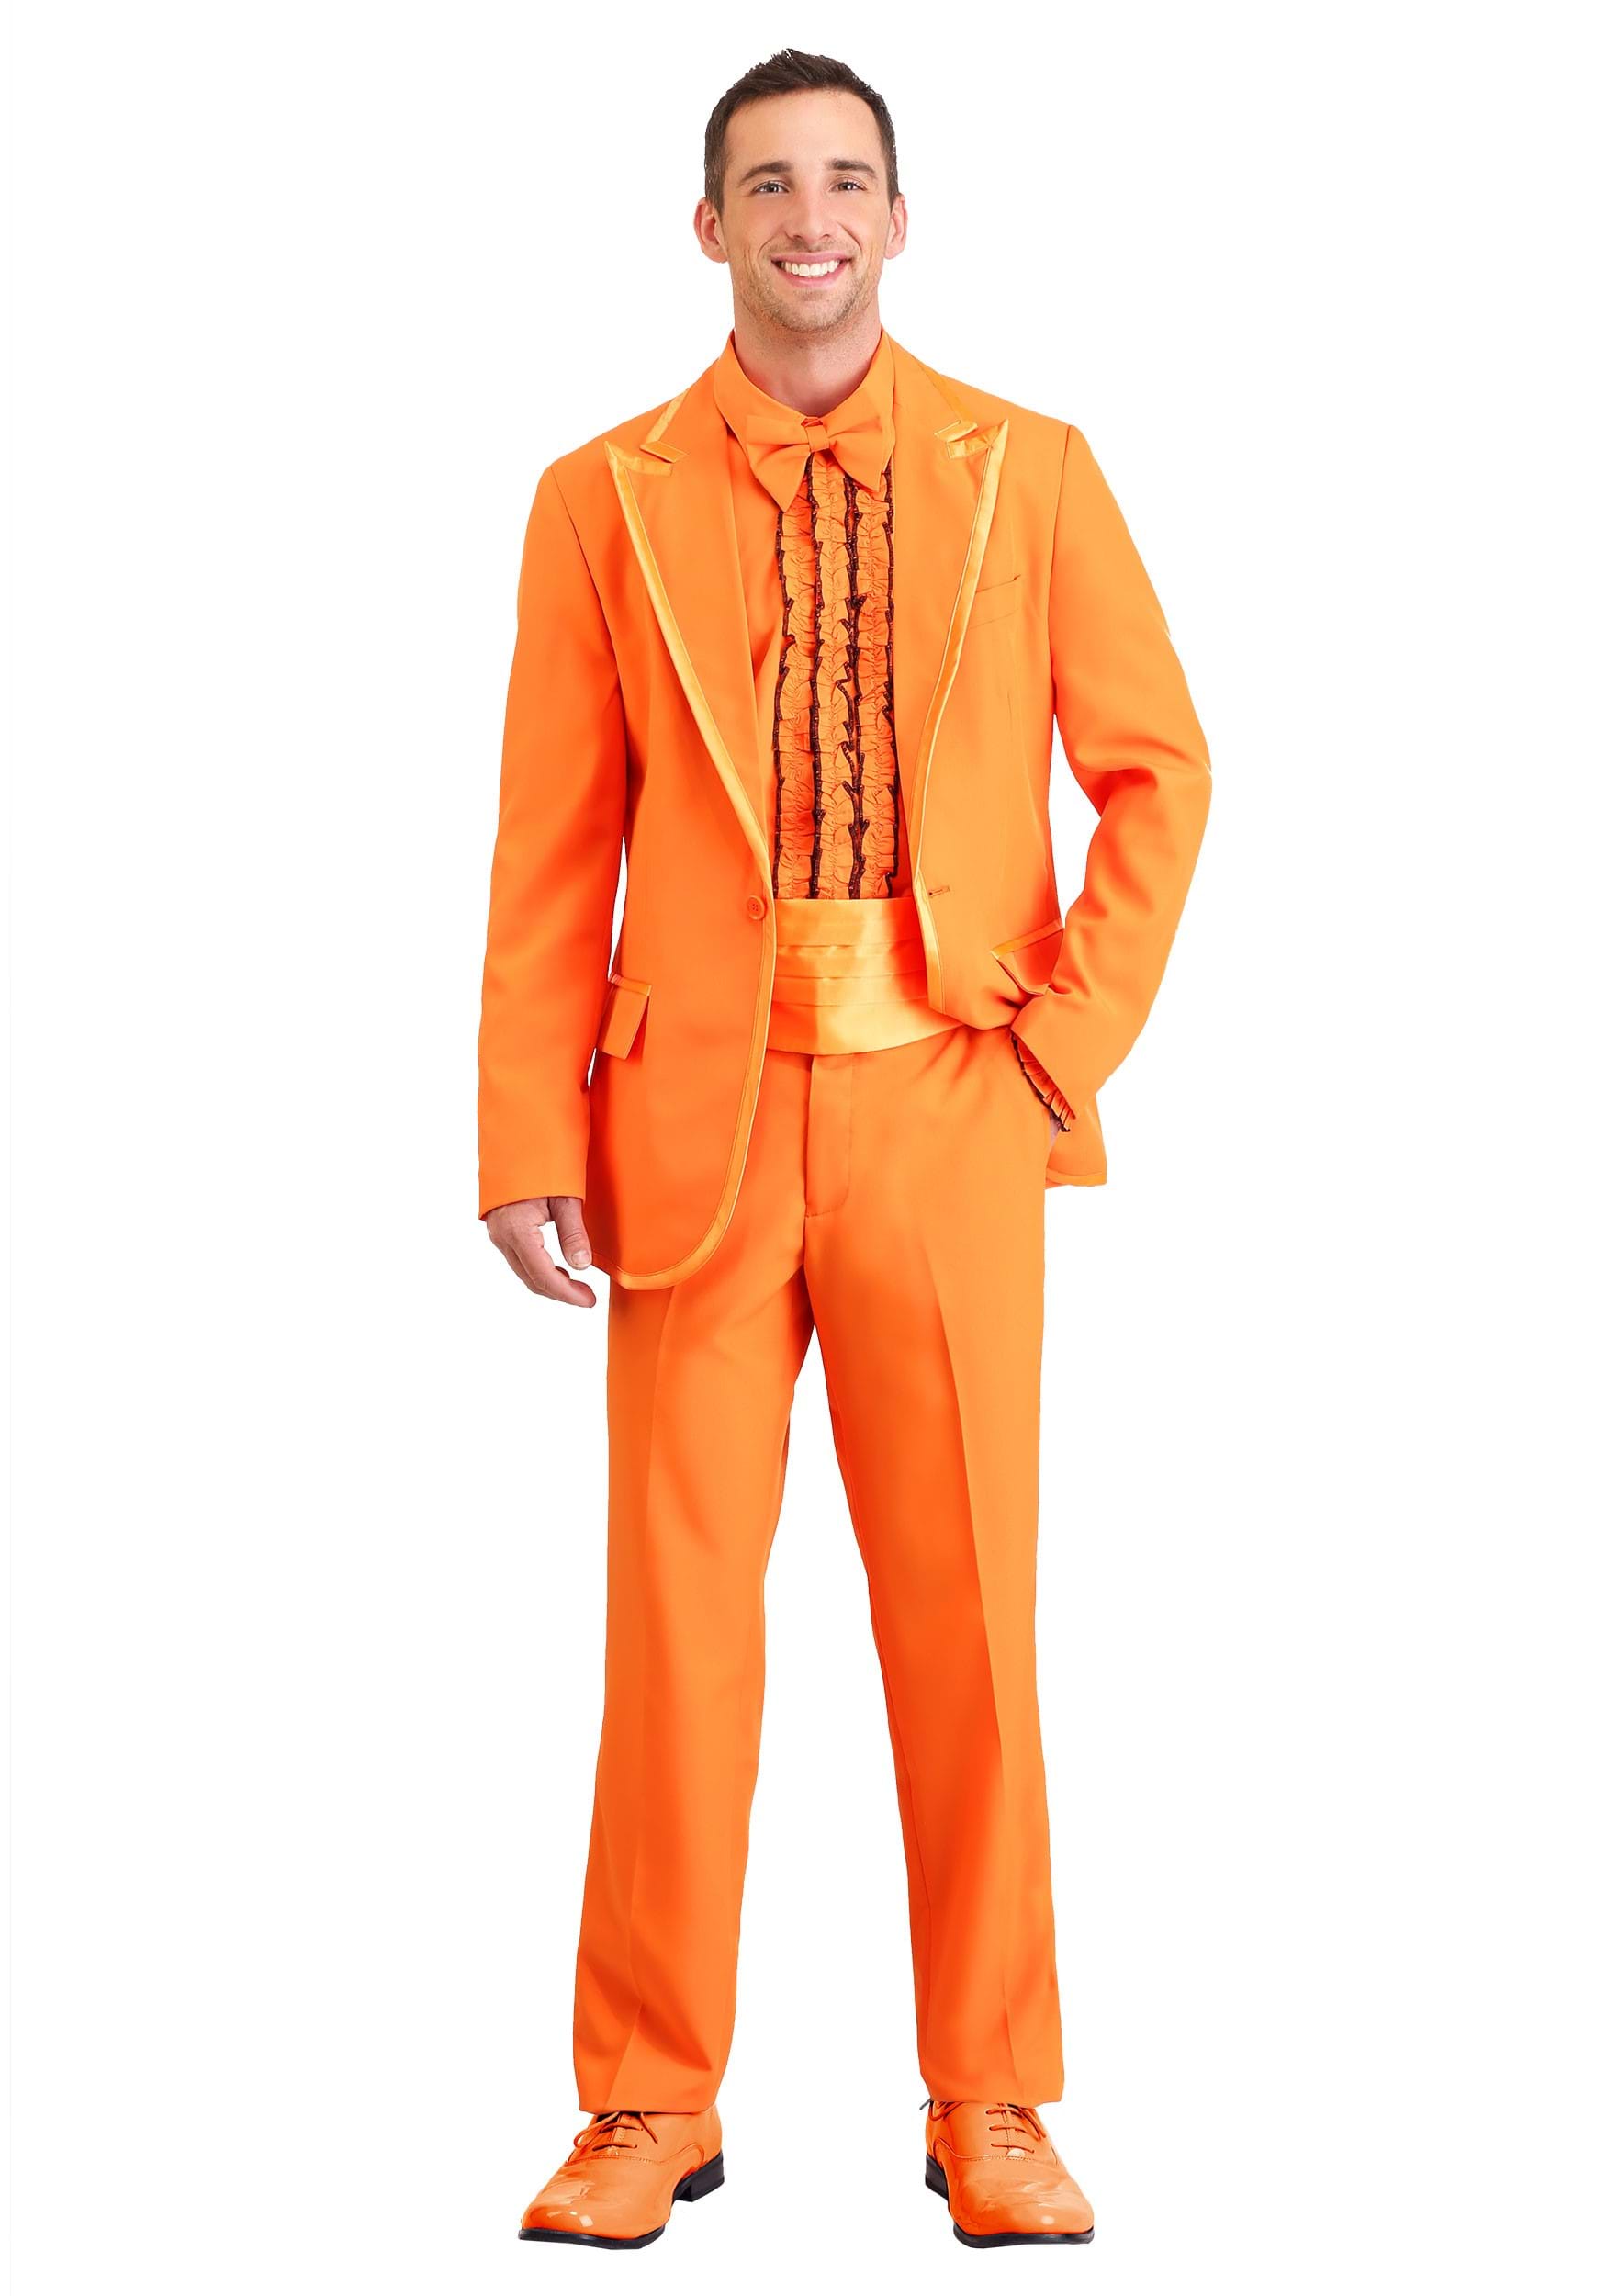 Photos - Fancy Dress FUN Costumes Adult Orange Tuxedo Costume | Men's Suits Orange FUN0216AD